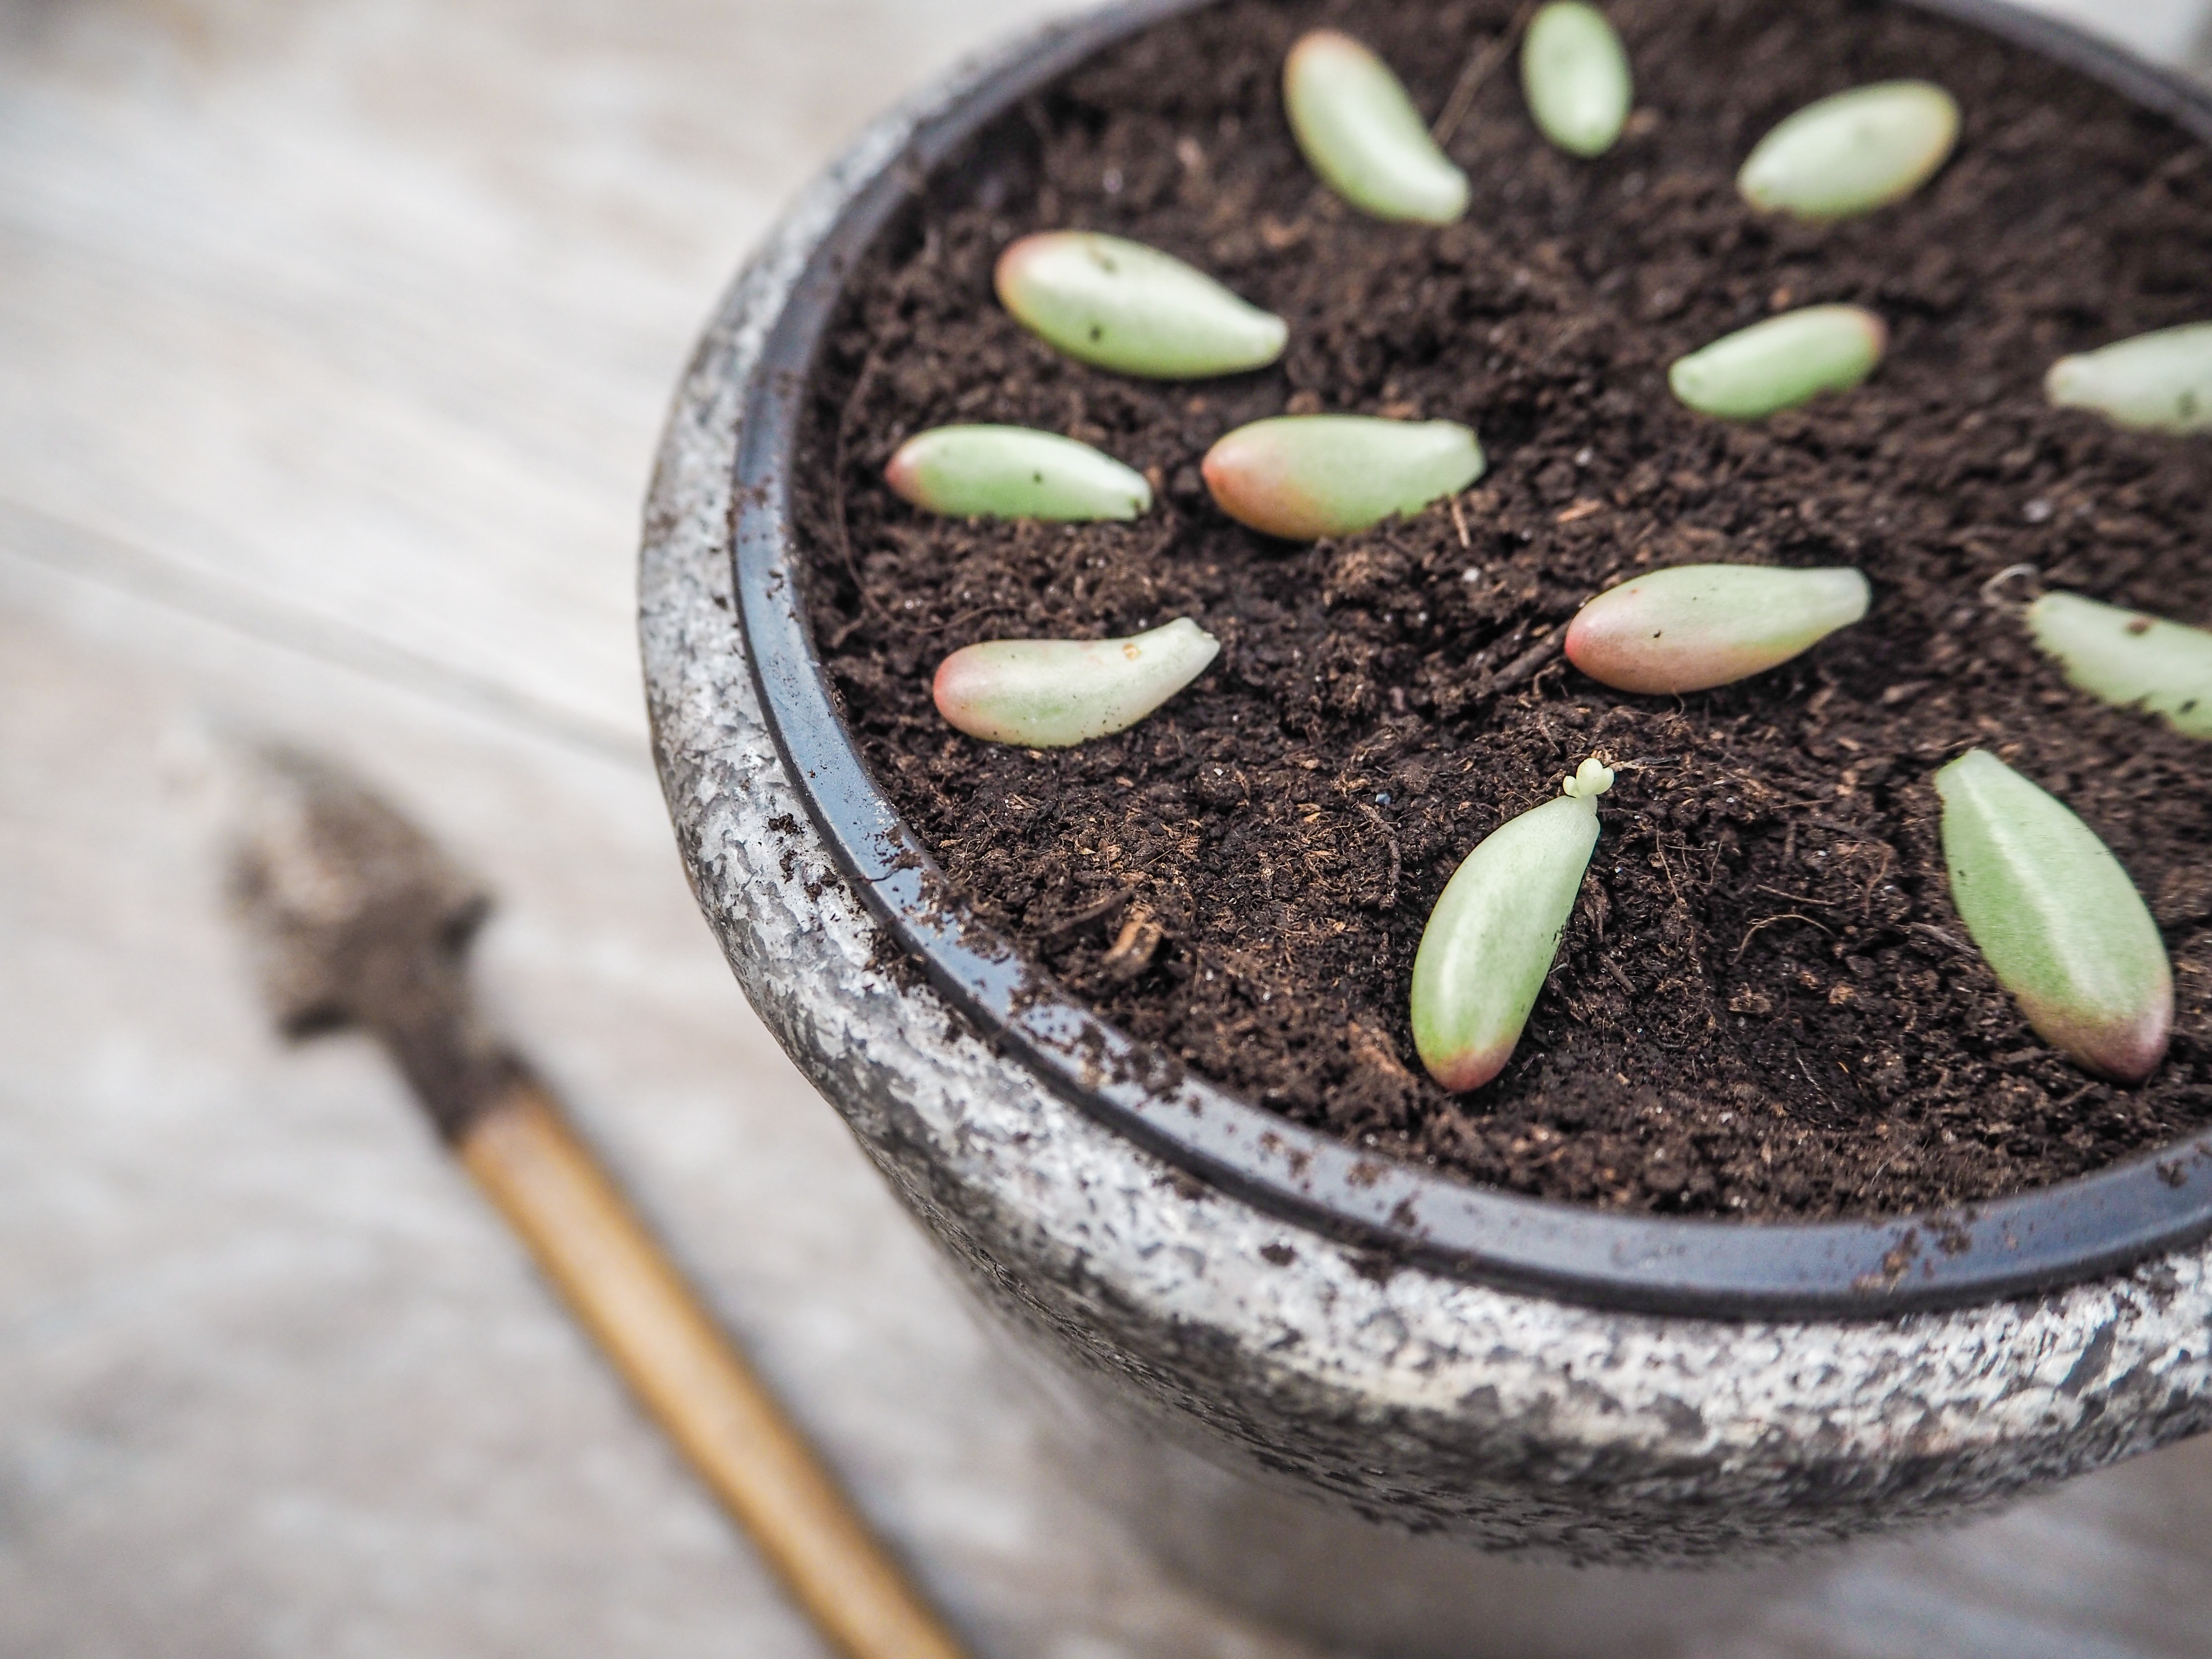 Le bouturage des plantes grasses est très simple : déposez juste une petite feuille ou un bout de tige sur un substrat très drainant et sec et vous obtiendrez, en quelques semaines, une nouvelle succulente. Copyright (c) 2017 Luoxi/Shutterstock.